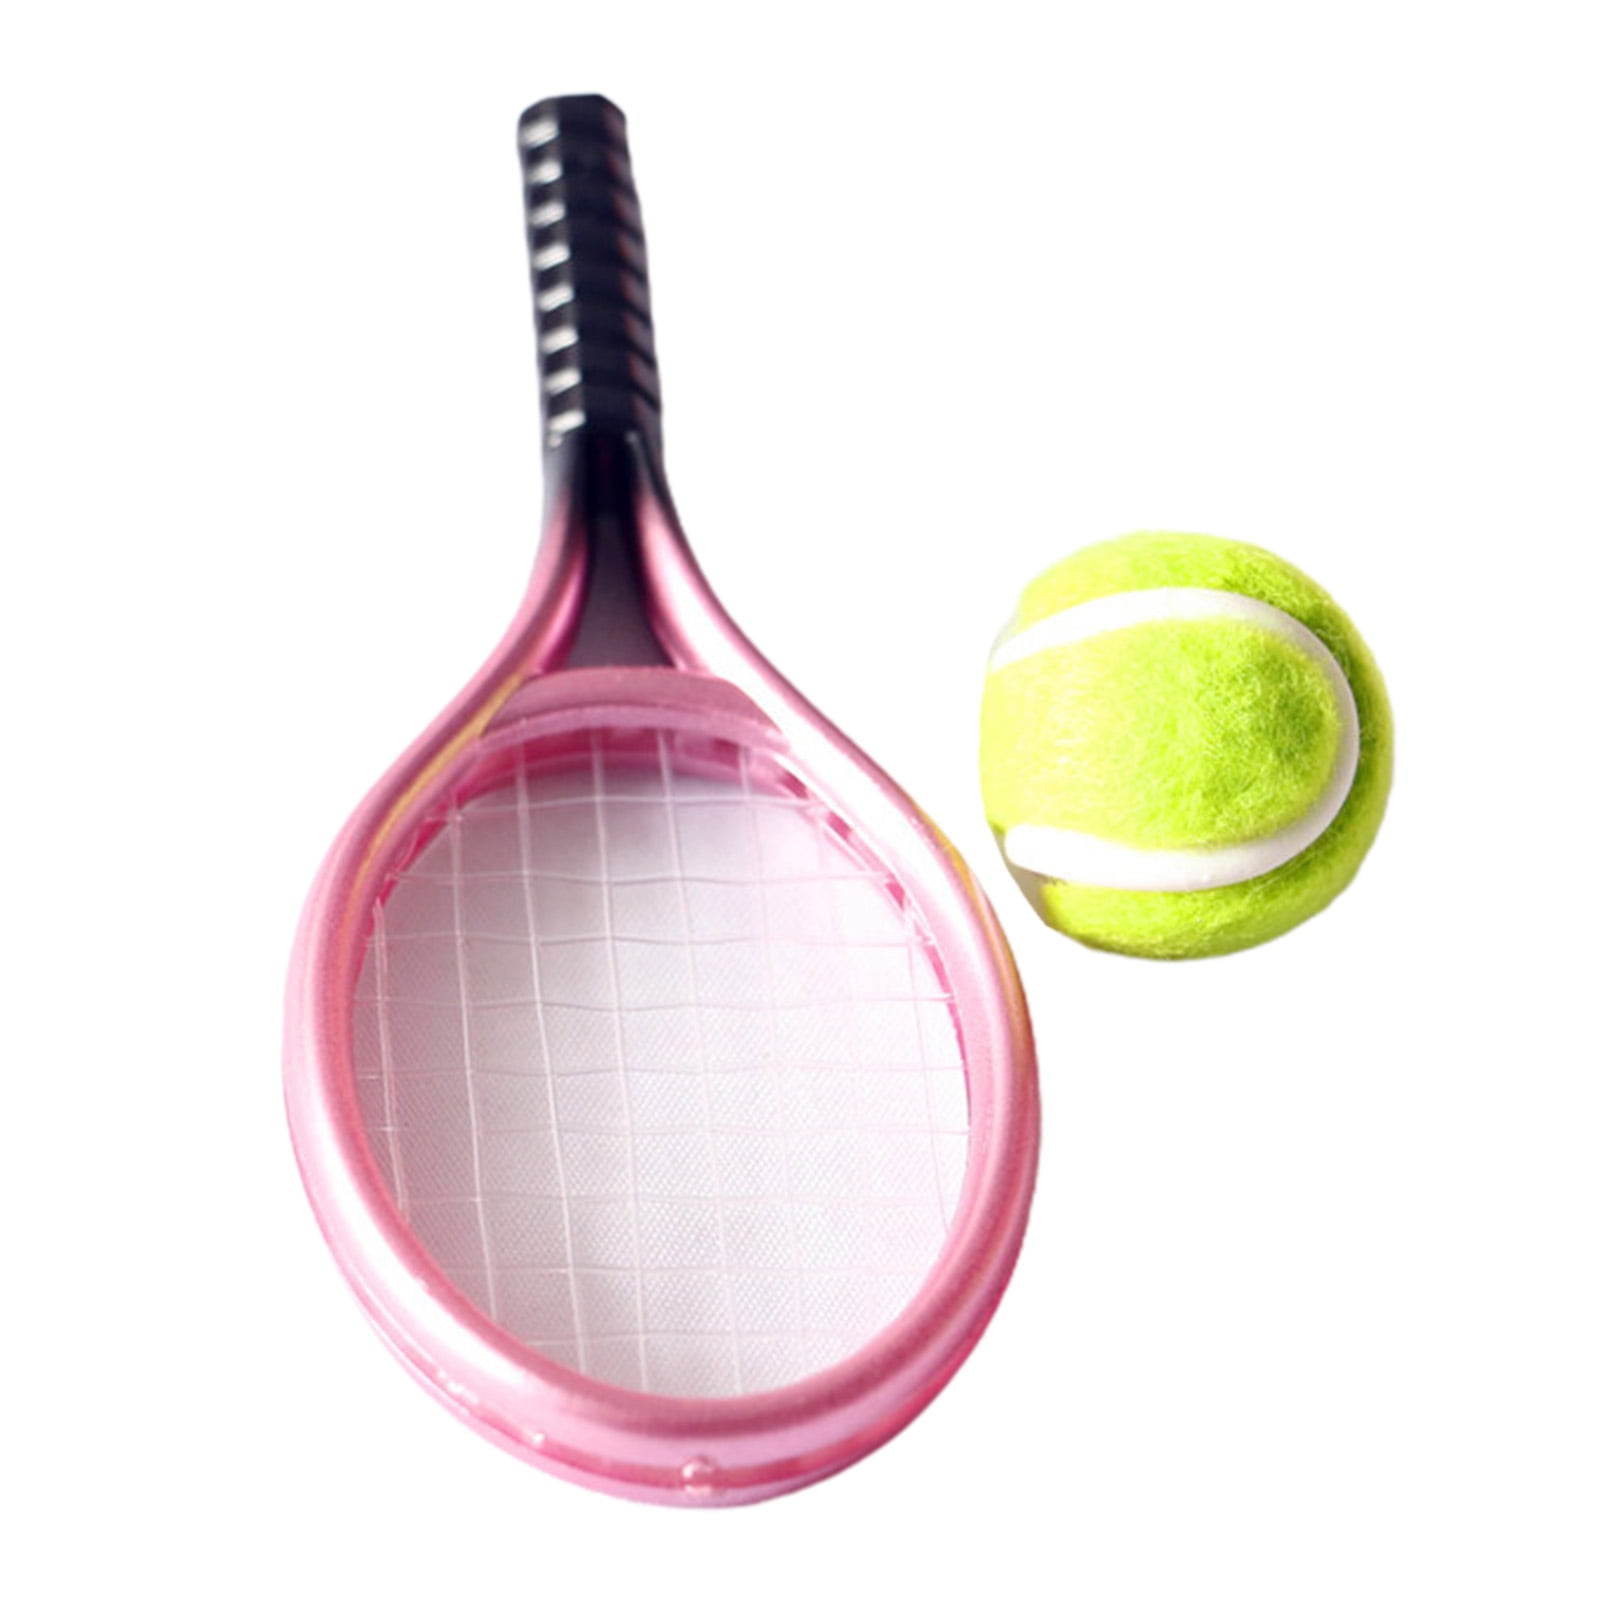 Miniature Dollhouse FAIRY GARDEN Accessories ~ Tennis Racket & Ball ~ NEW 